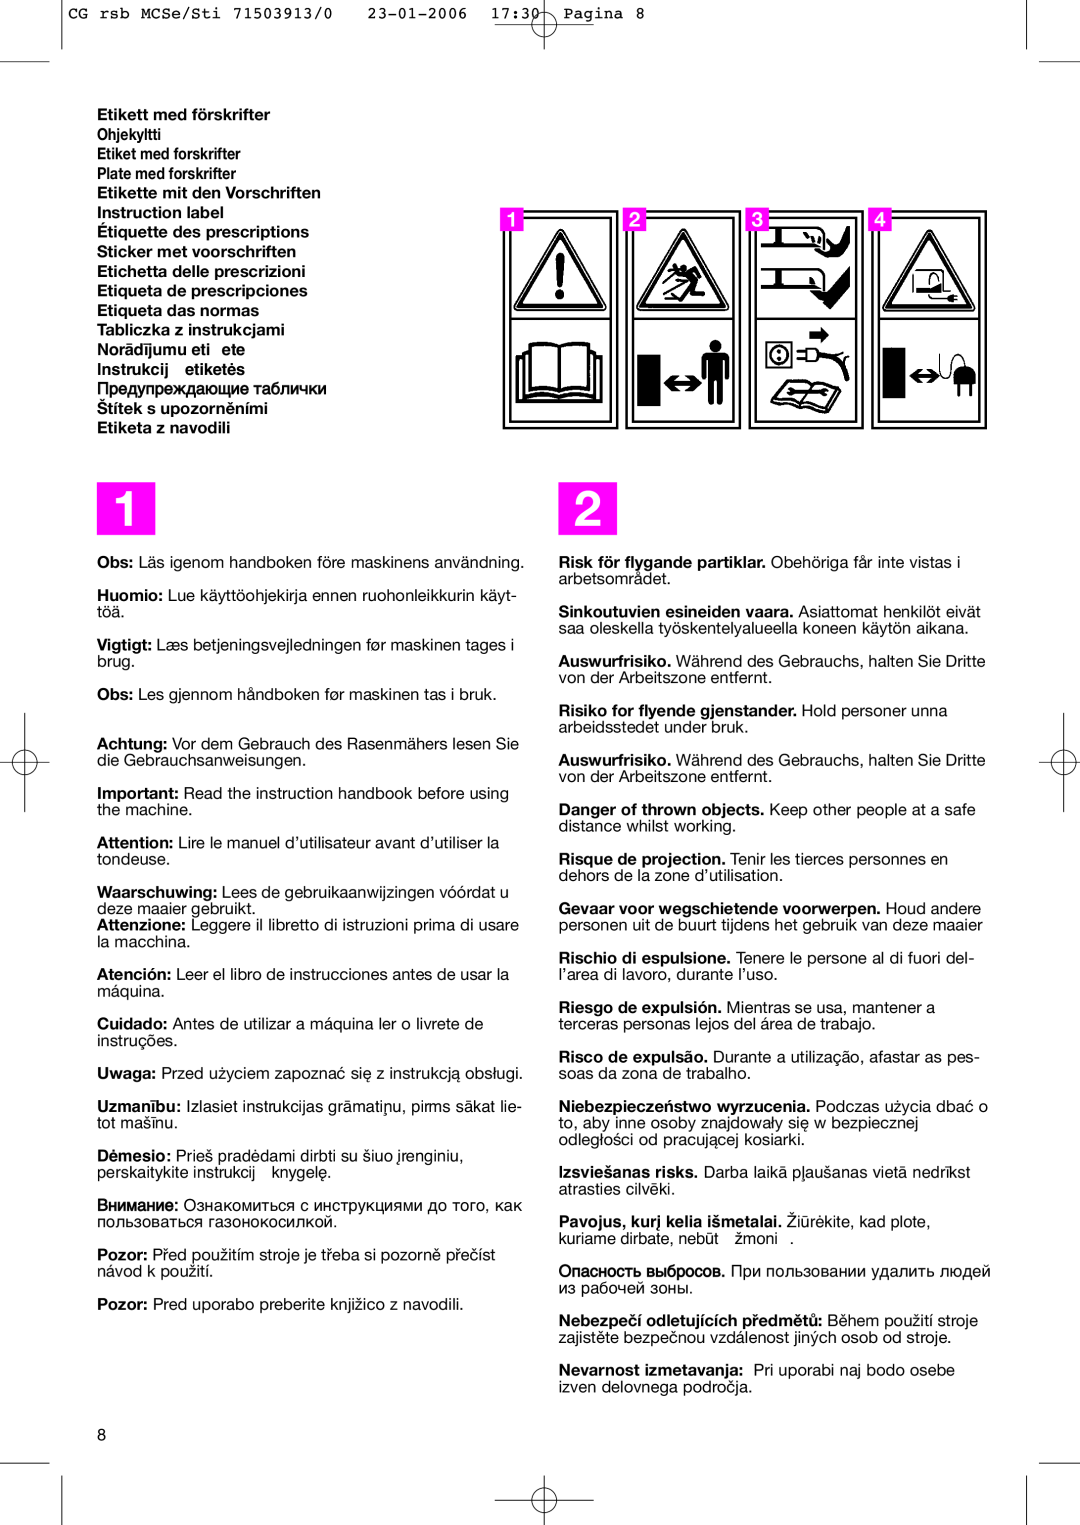 Stiga 50 EL manual Etikett med förskrifter, èÂ‰ÛÔÂÊ‰‡˛˘ËÂ Ú‡·ÎË˜ÍË 